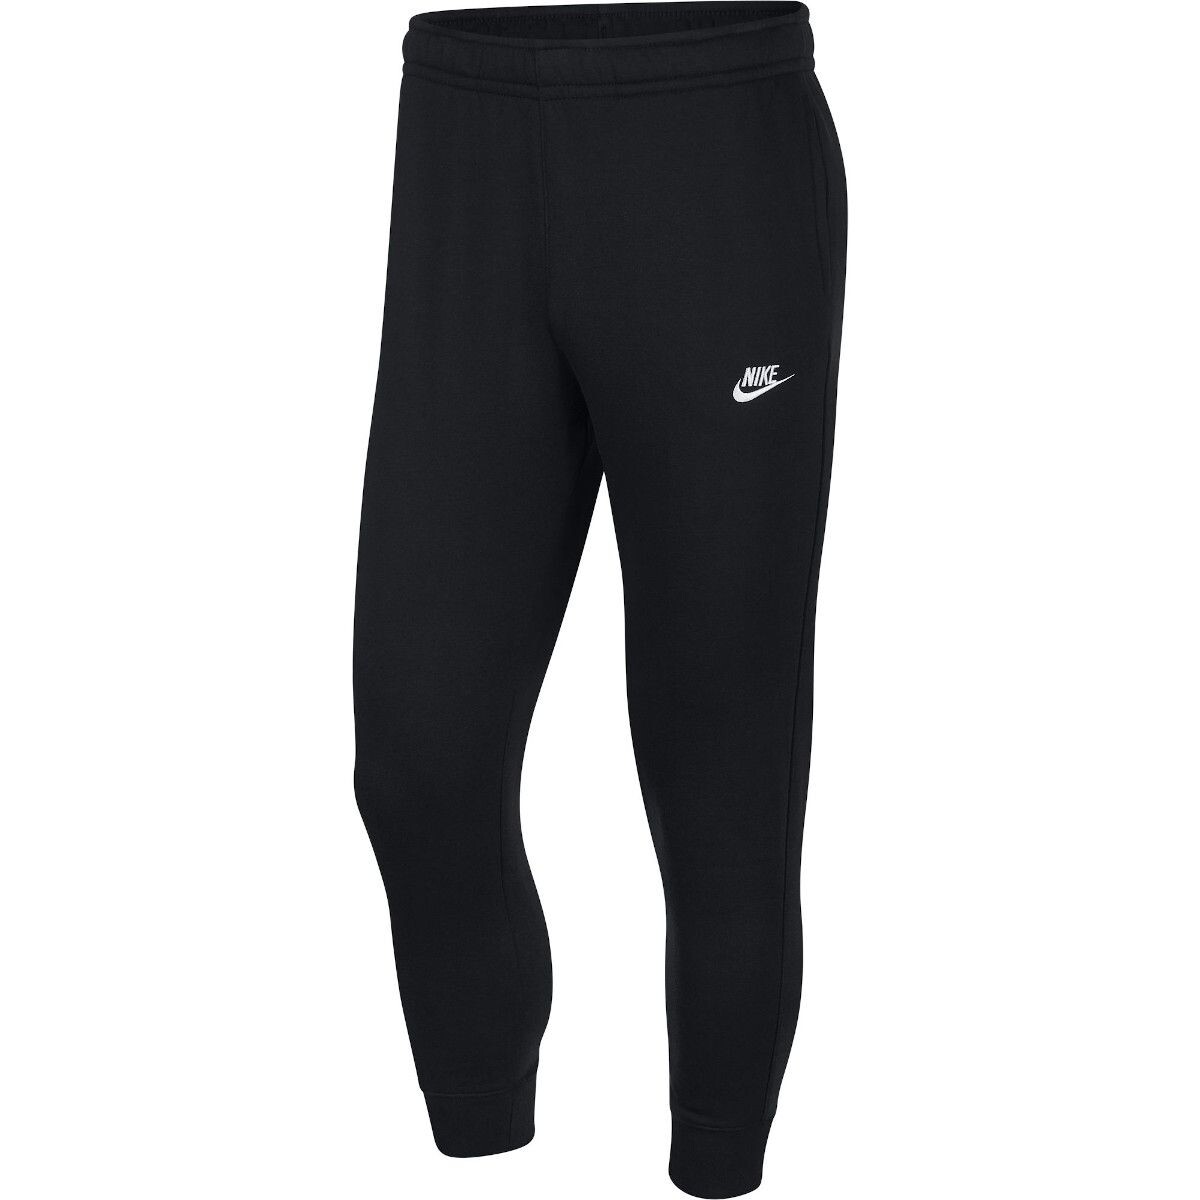 Pantalon Nike Moda Hombre Club Jggr BB - S/C 